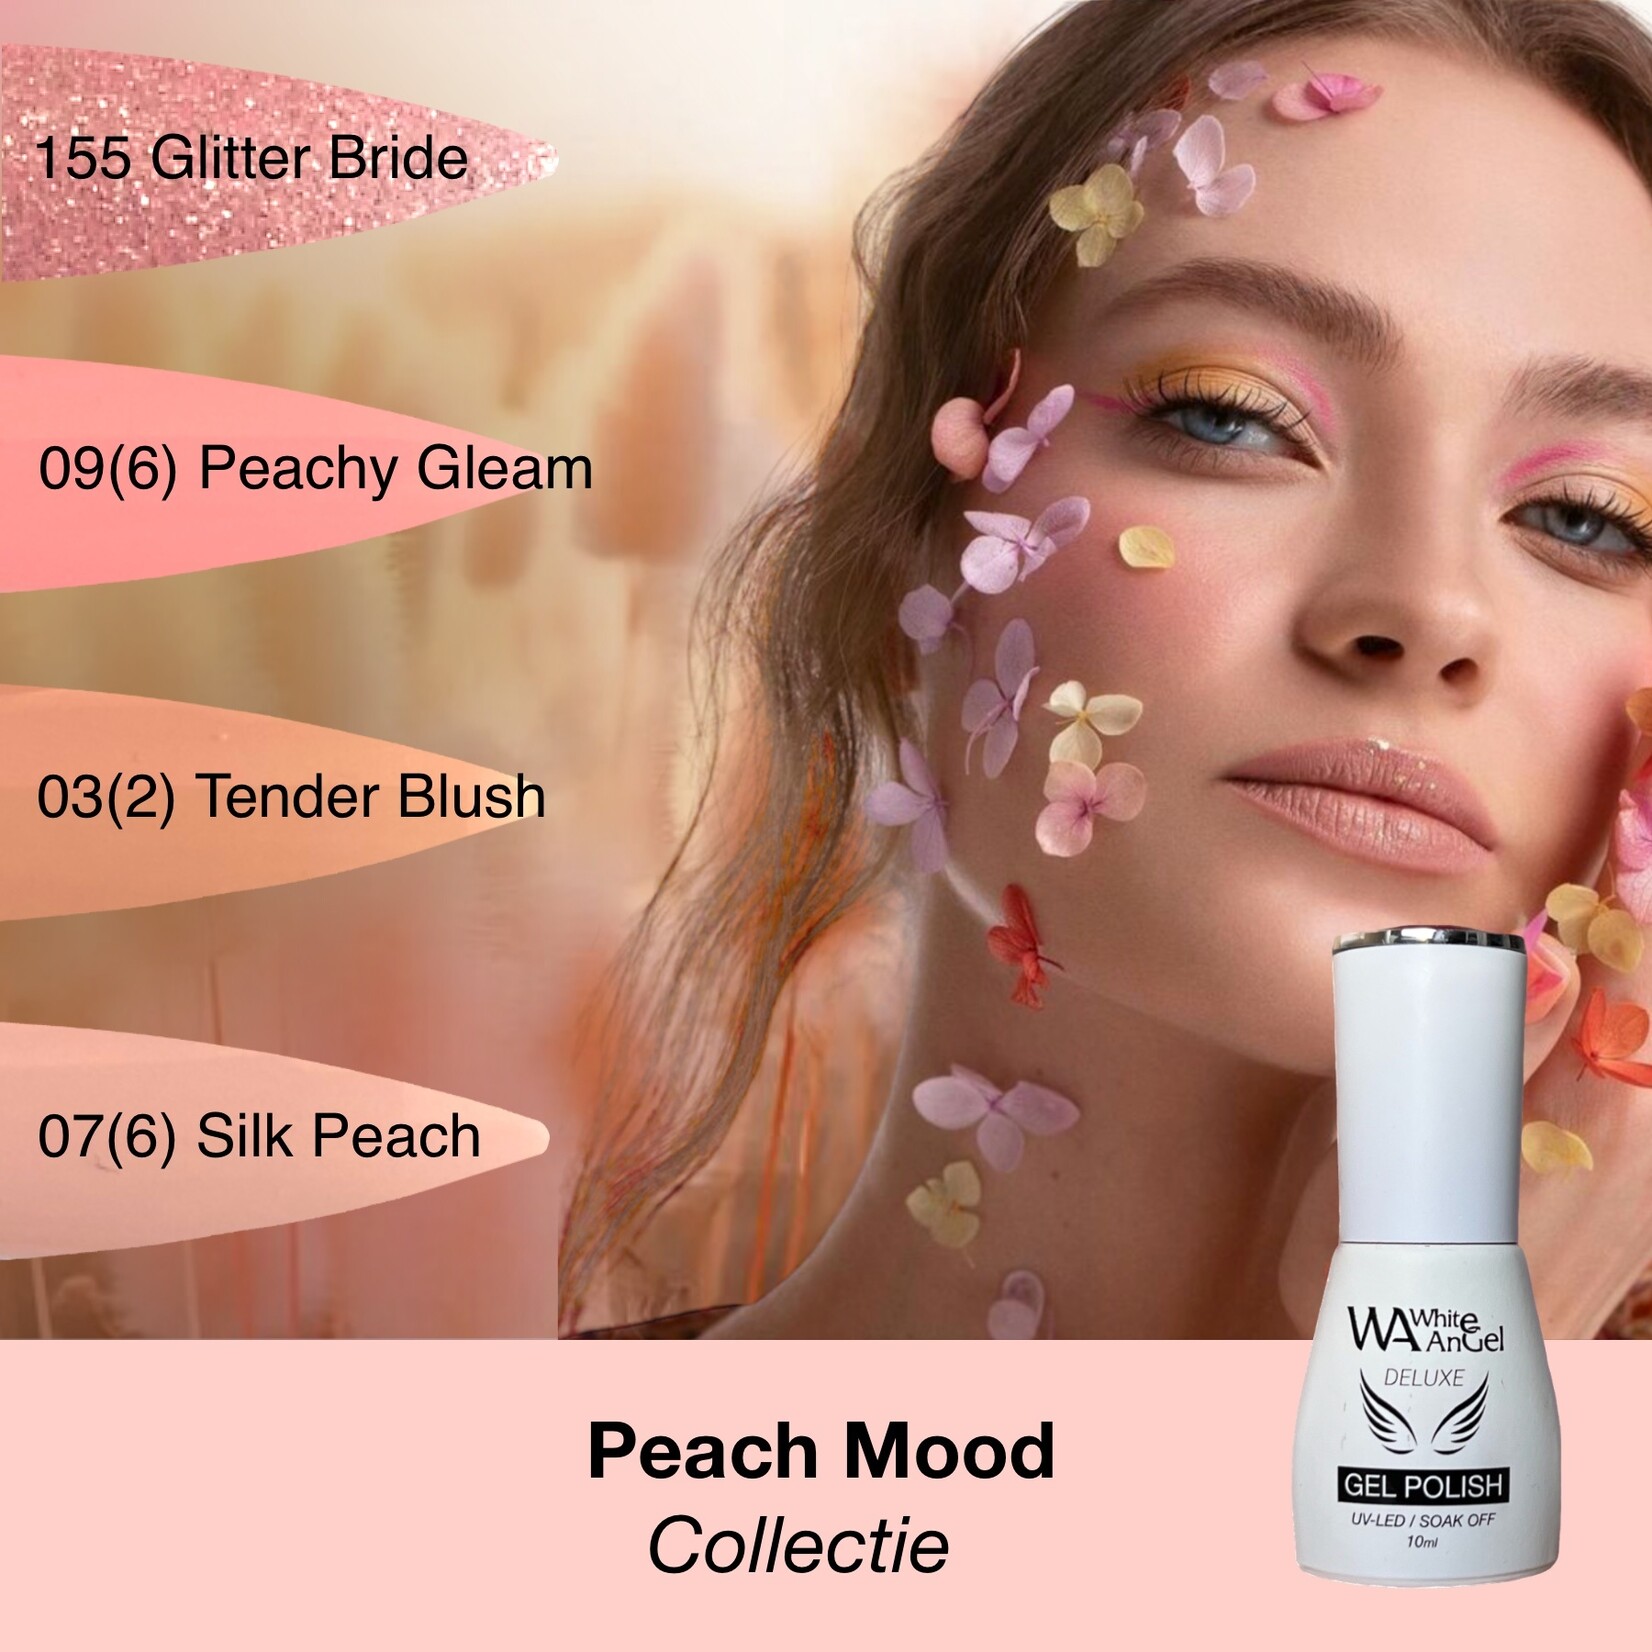 Gellex White Angel (Deluxe) - Peach Mood Collectie 10ml